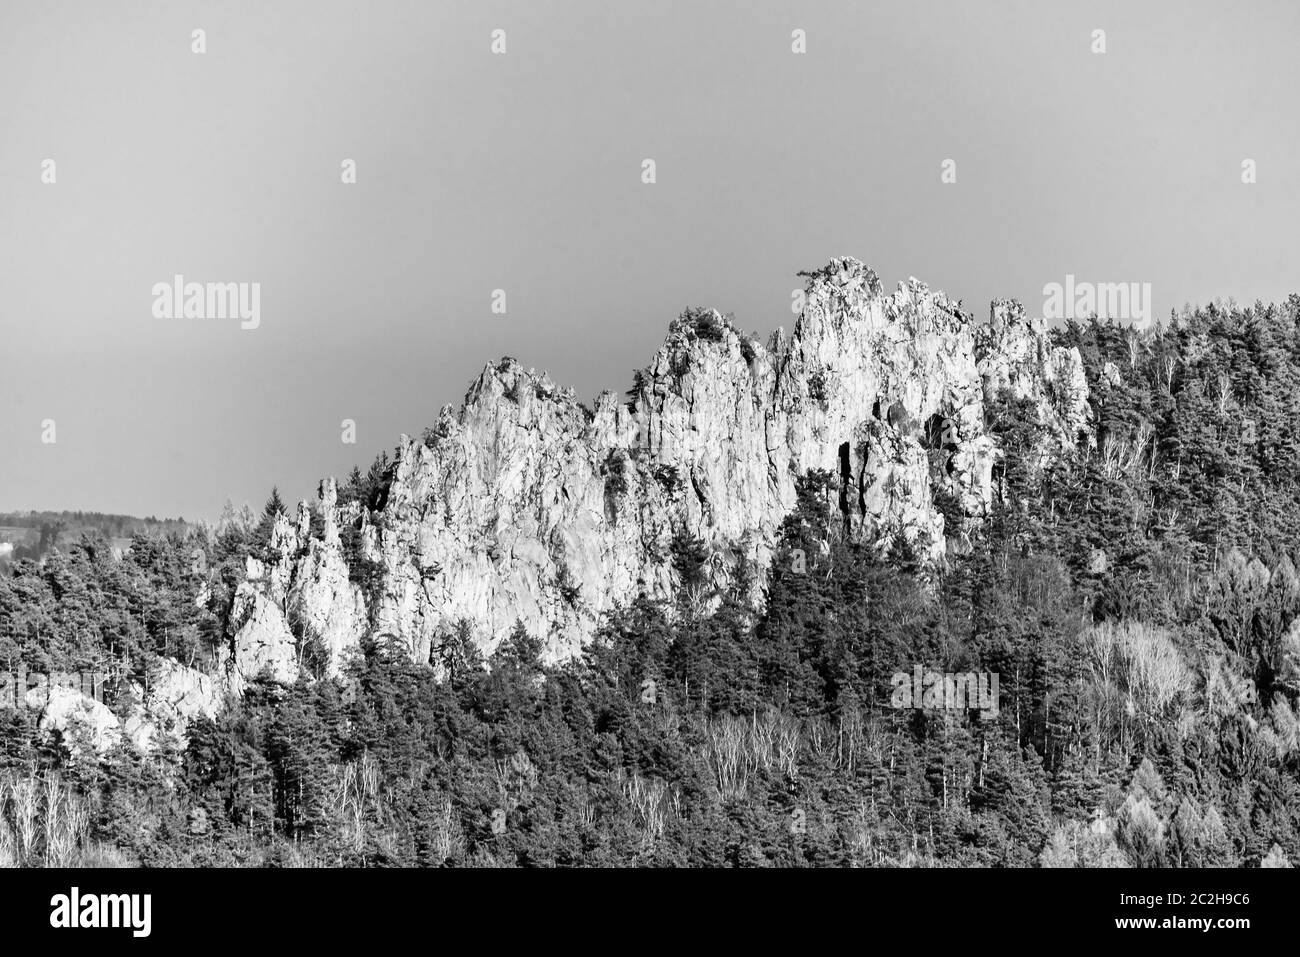 Dry Rocks, Tchèque: Suche skaly. Formation de grès à Boemian Paradise, République tchèque. Image en noir et blanc. Banque D'Images